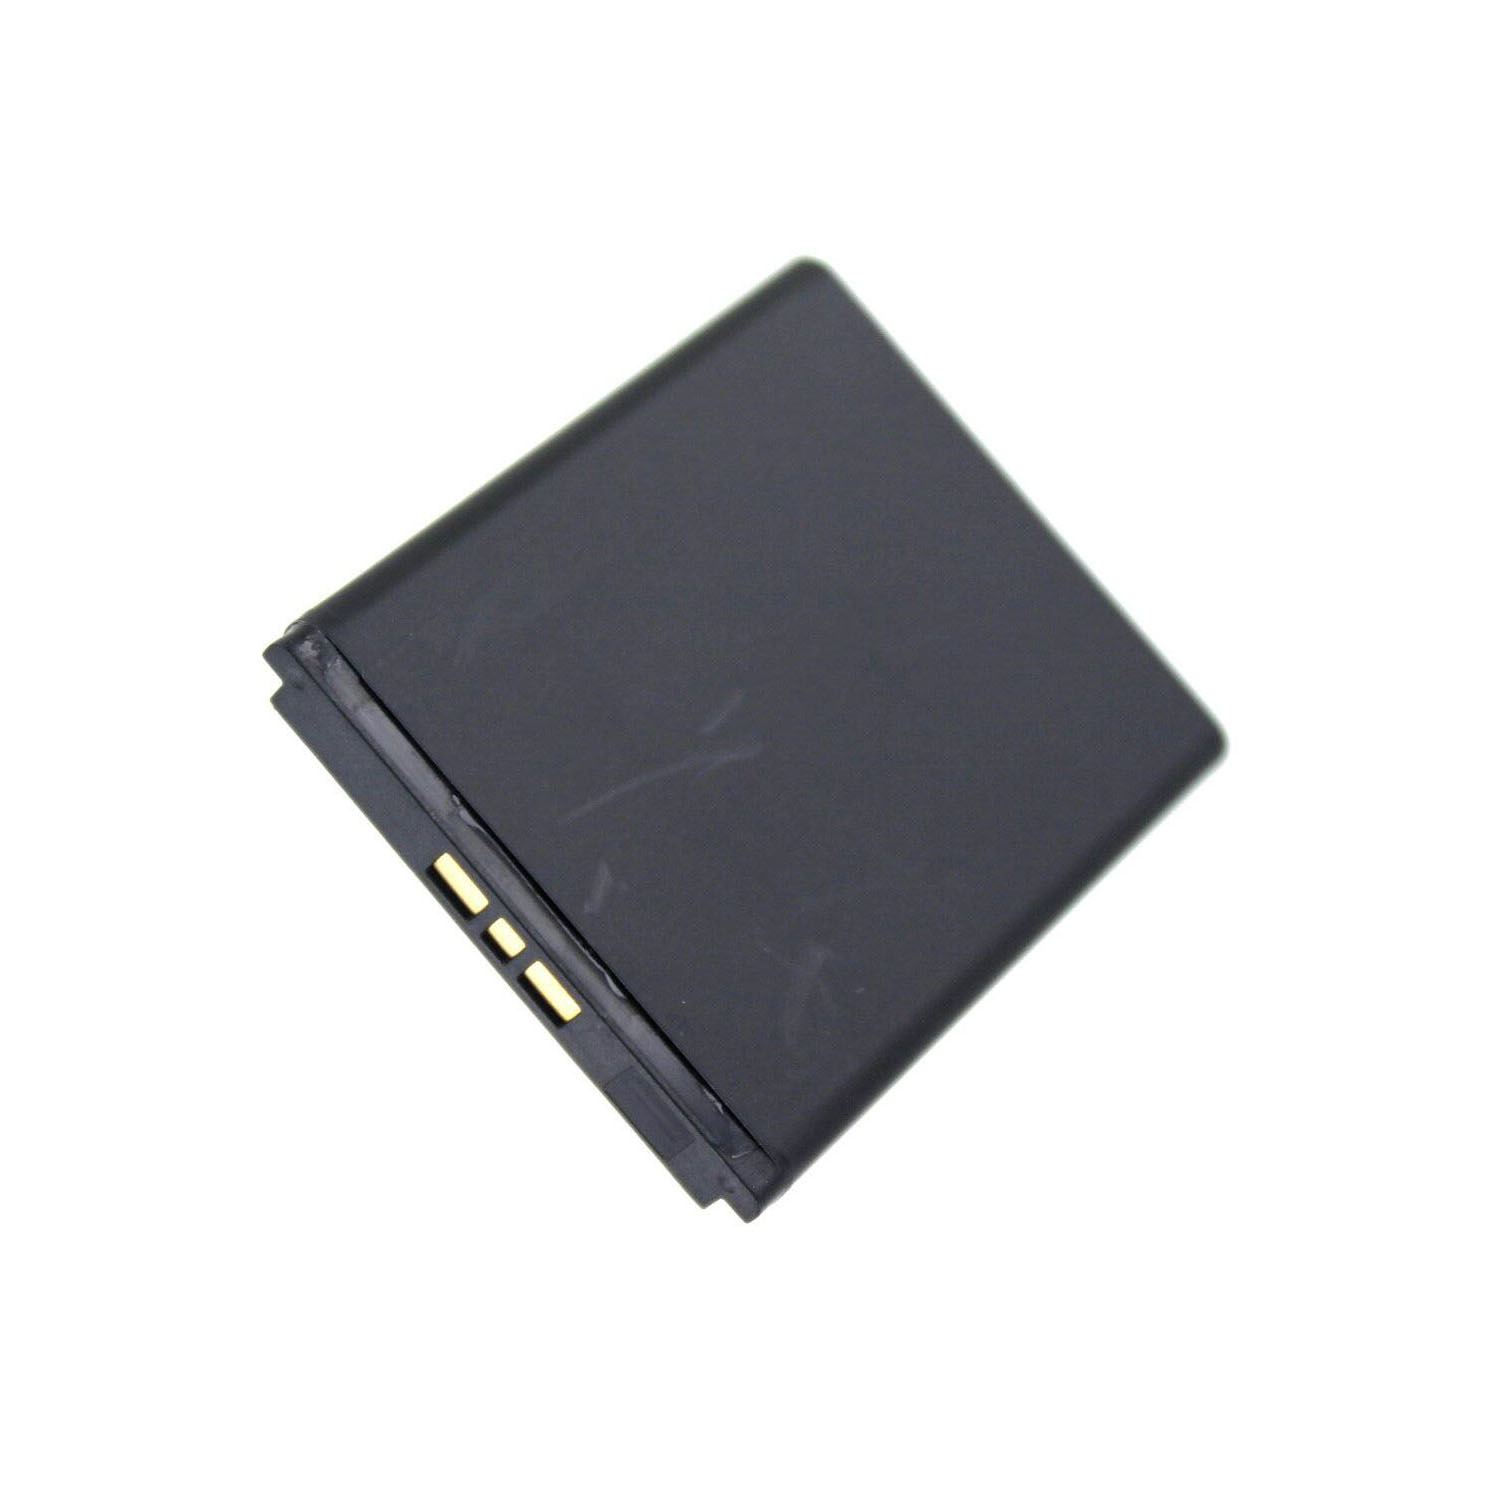 Akku kompatibel mit Sony Ericsson AAD-3022031-BV 3,00 Volt 860 mAh 2,58 Wh Li-Ion Akku